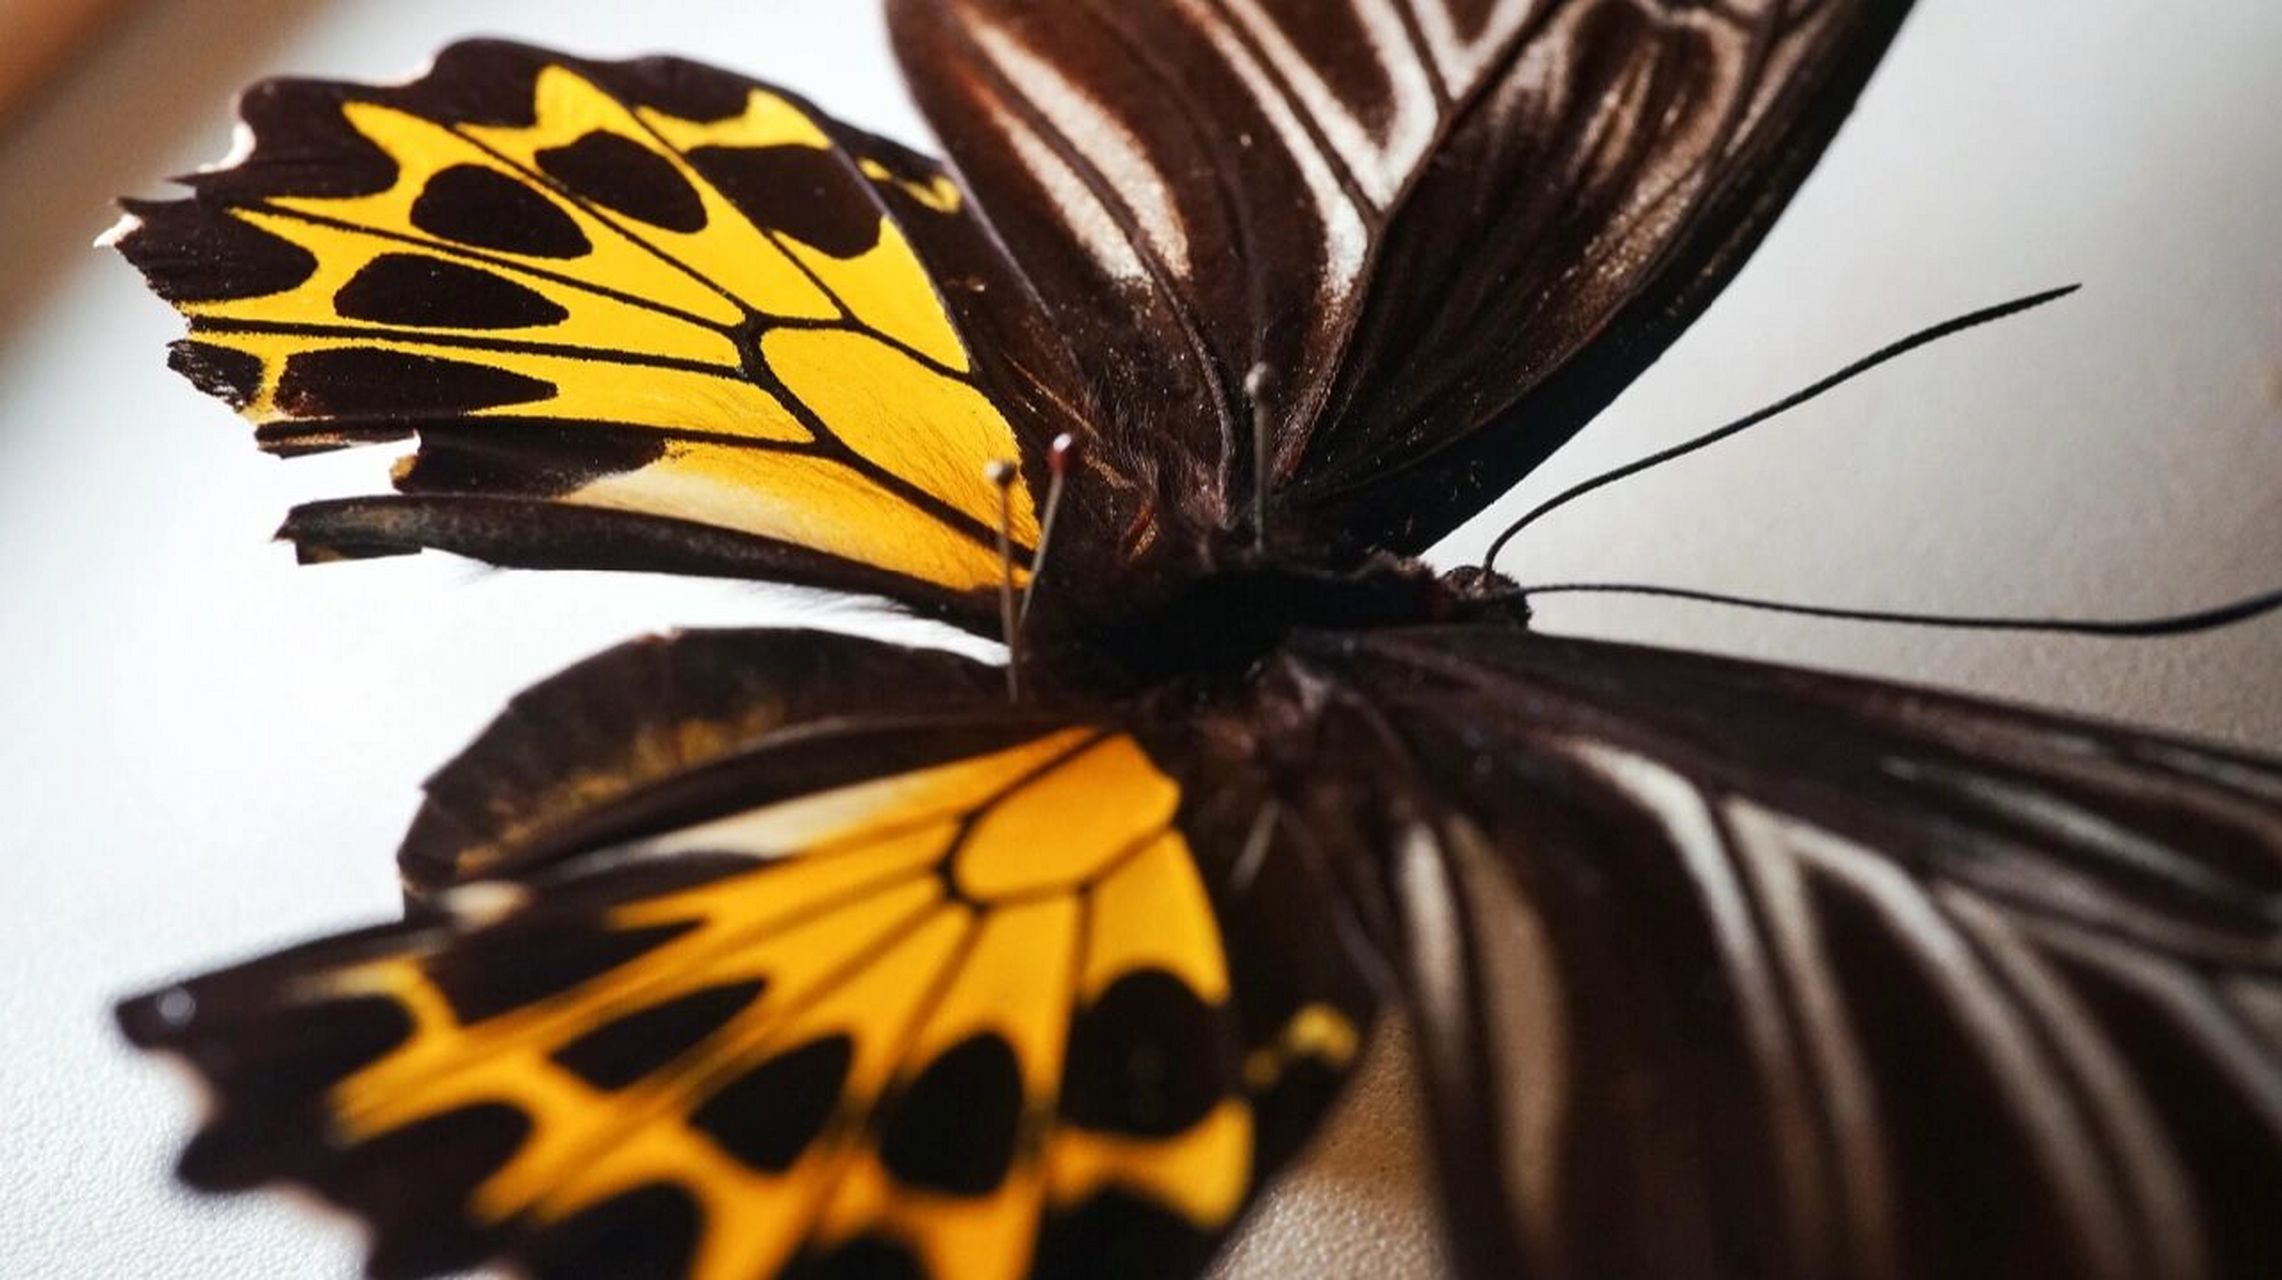 世界上最大的蝴蝶图片图片